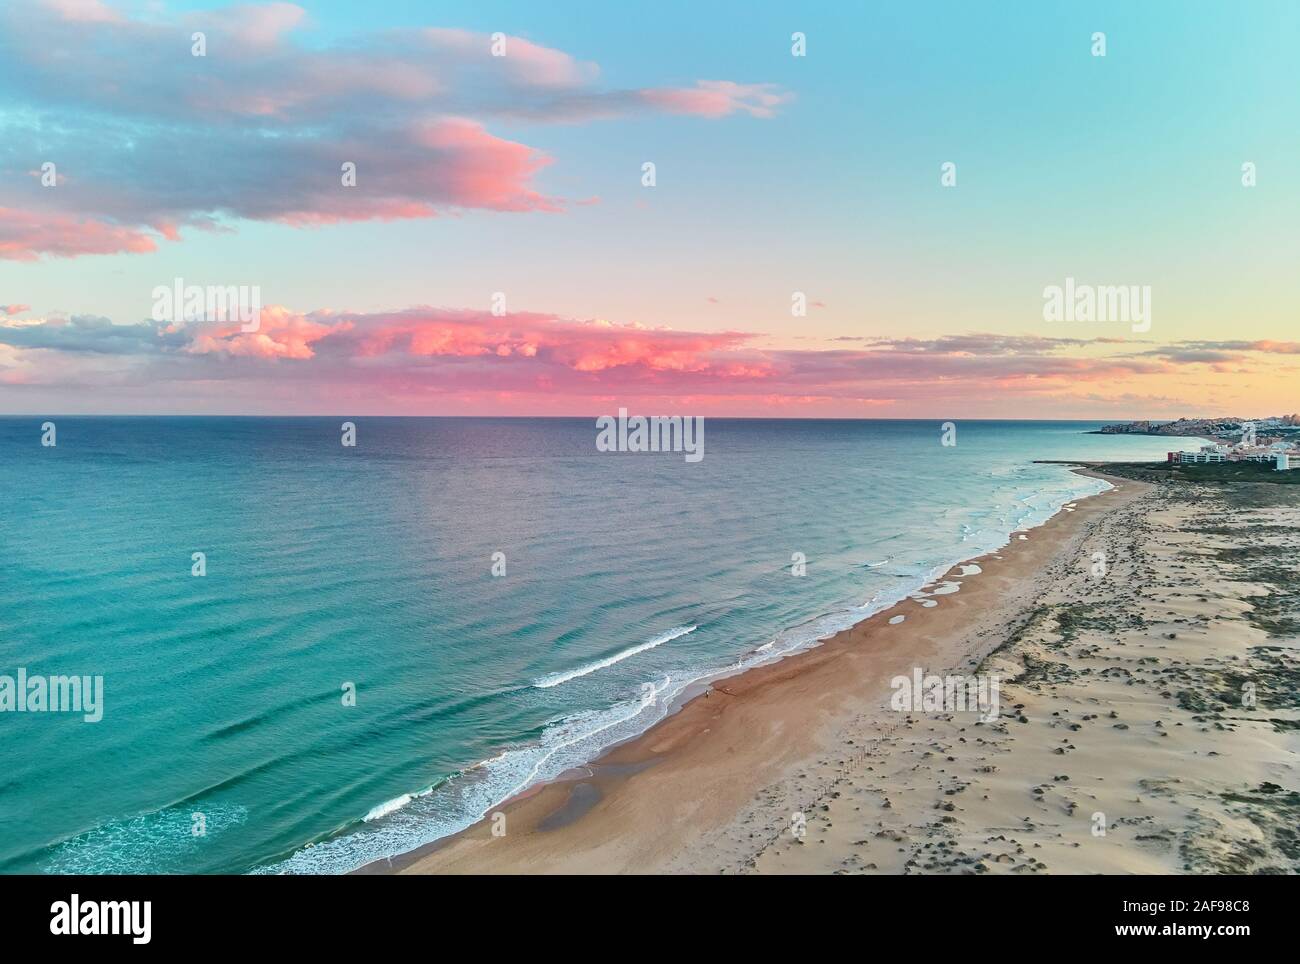 Paysage pittoresque vue aérienne drone paysage, bleu calme mer Méditerranée coloré doux nuages roses brillant au coucher du soleil ciel soir, Espagne Banque D'Images